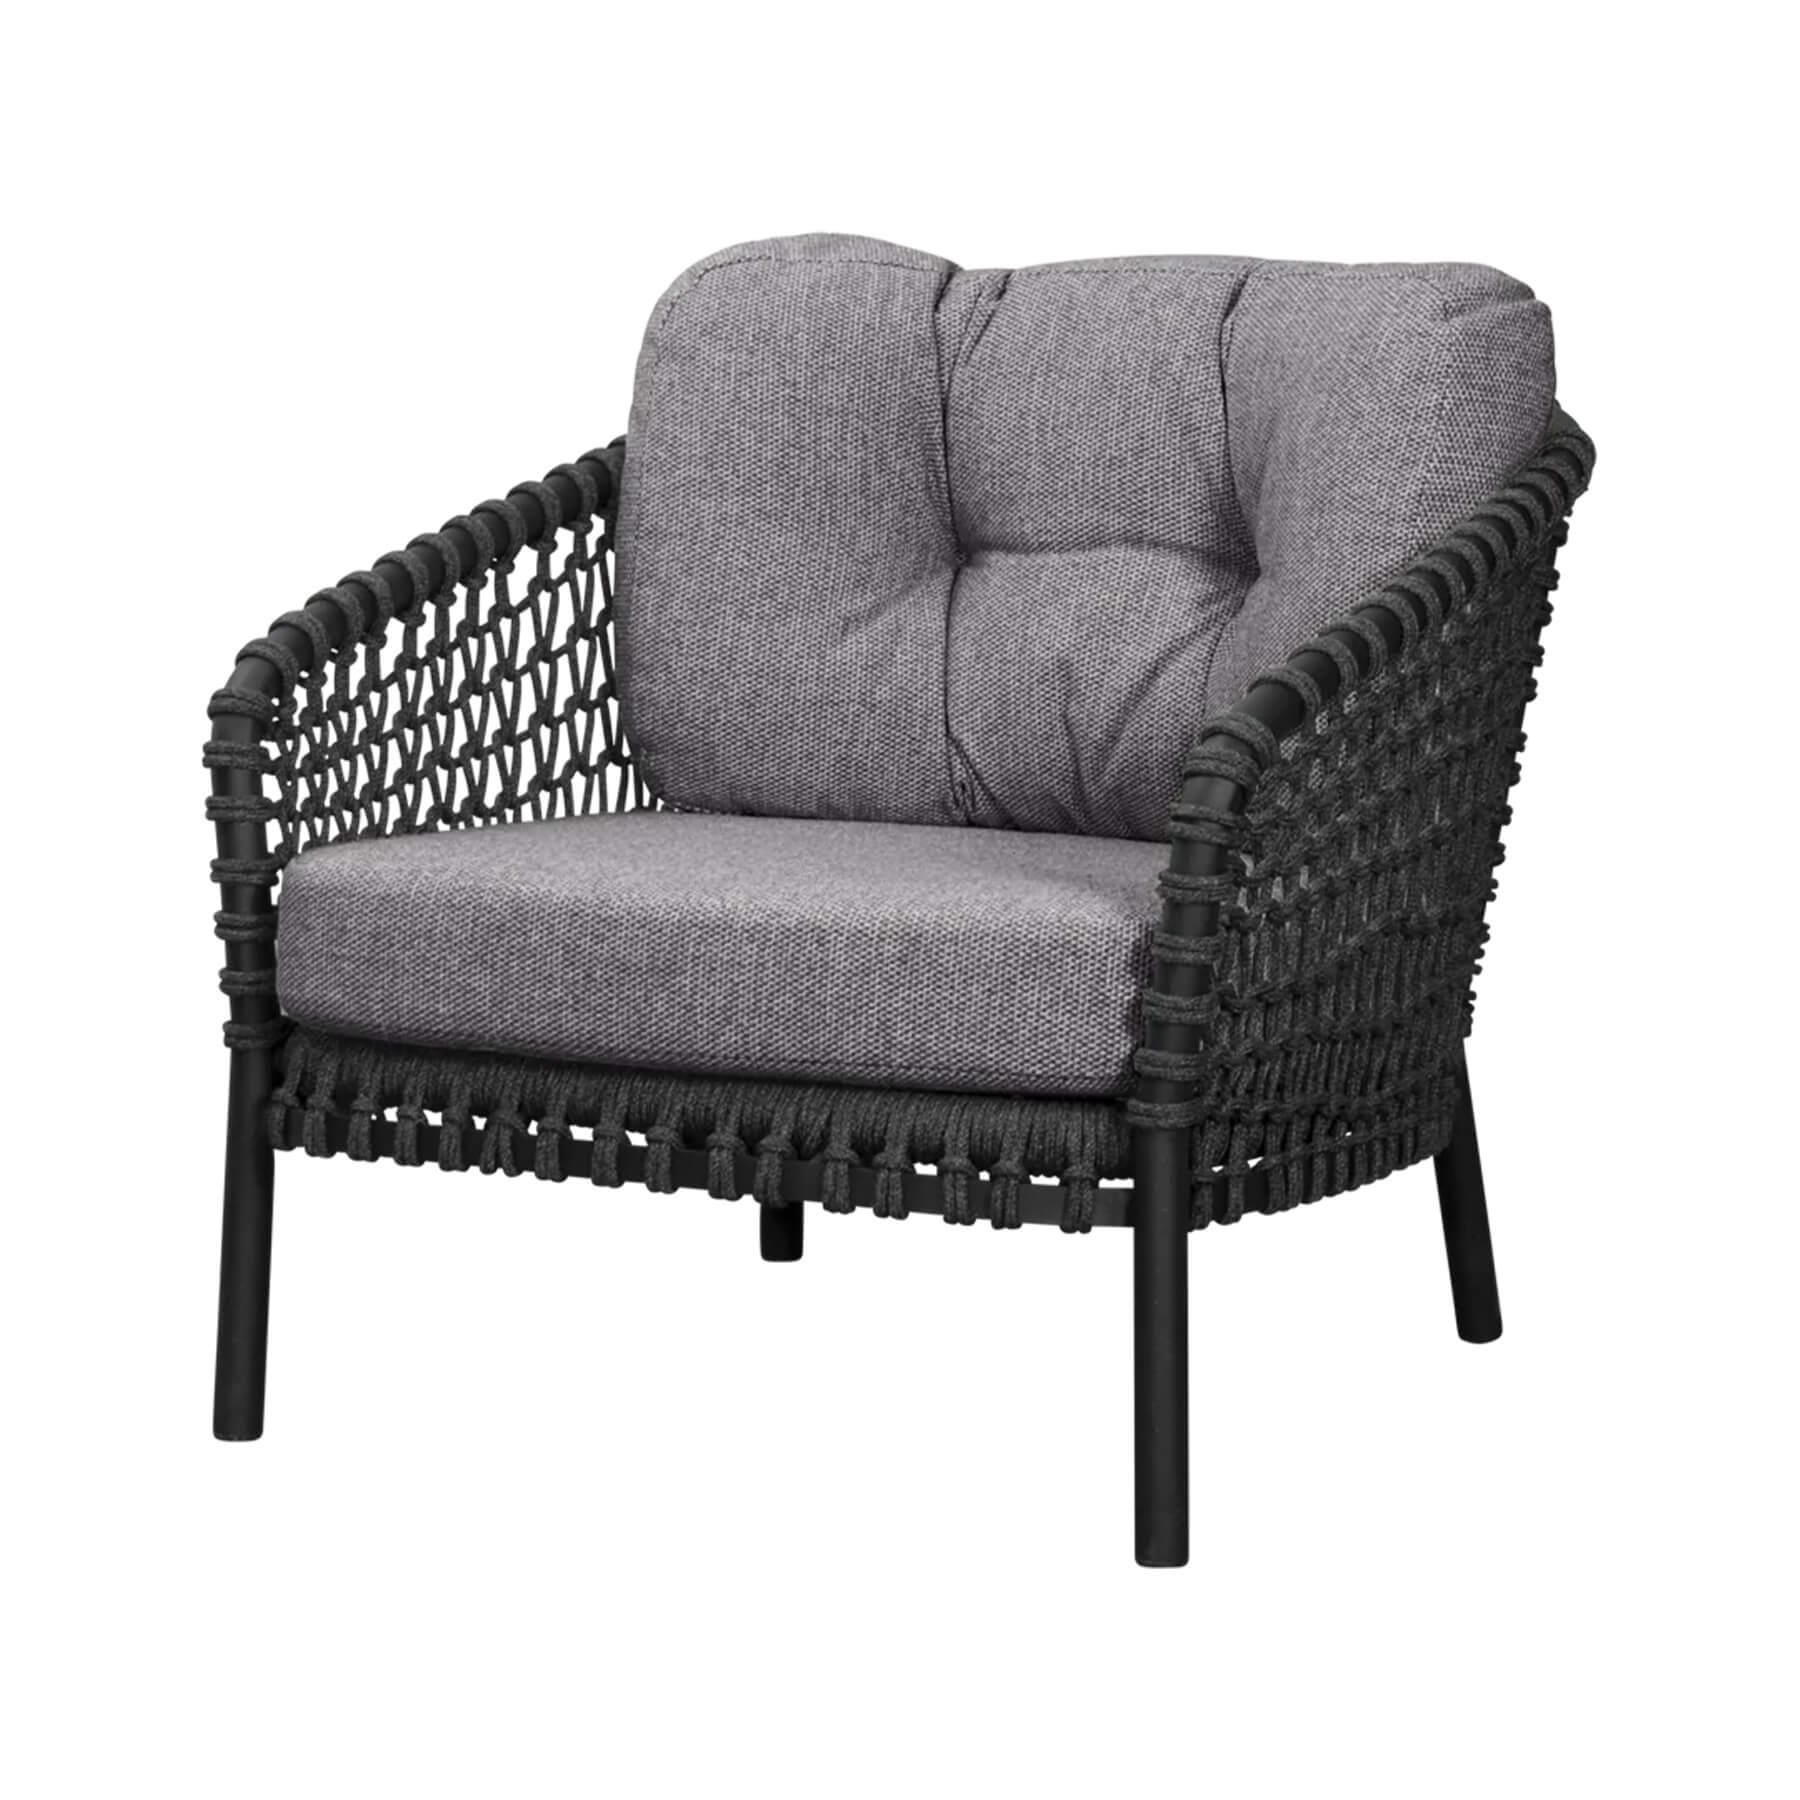 Caneline Ocean Lounge Chair Dark Grey Dark Grey Cushion Black Designer Furniture From Holloways Of Ludlow